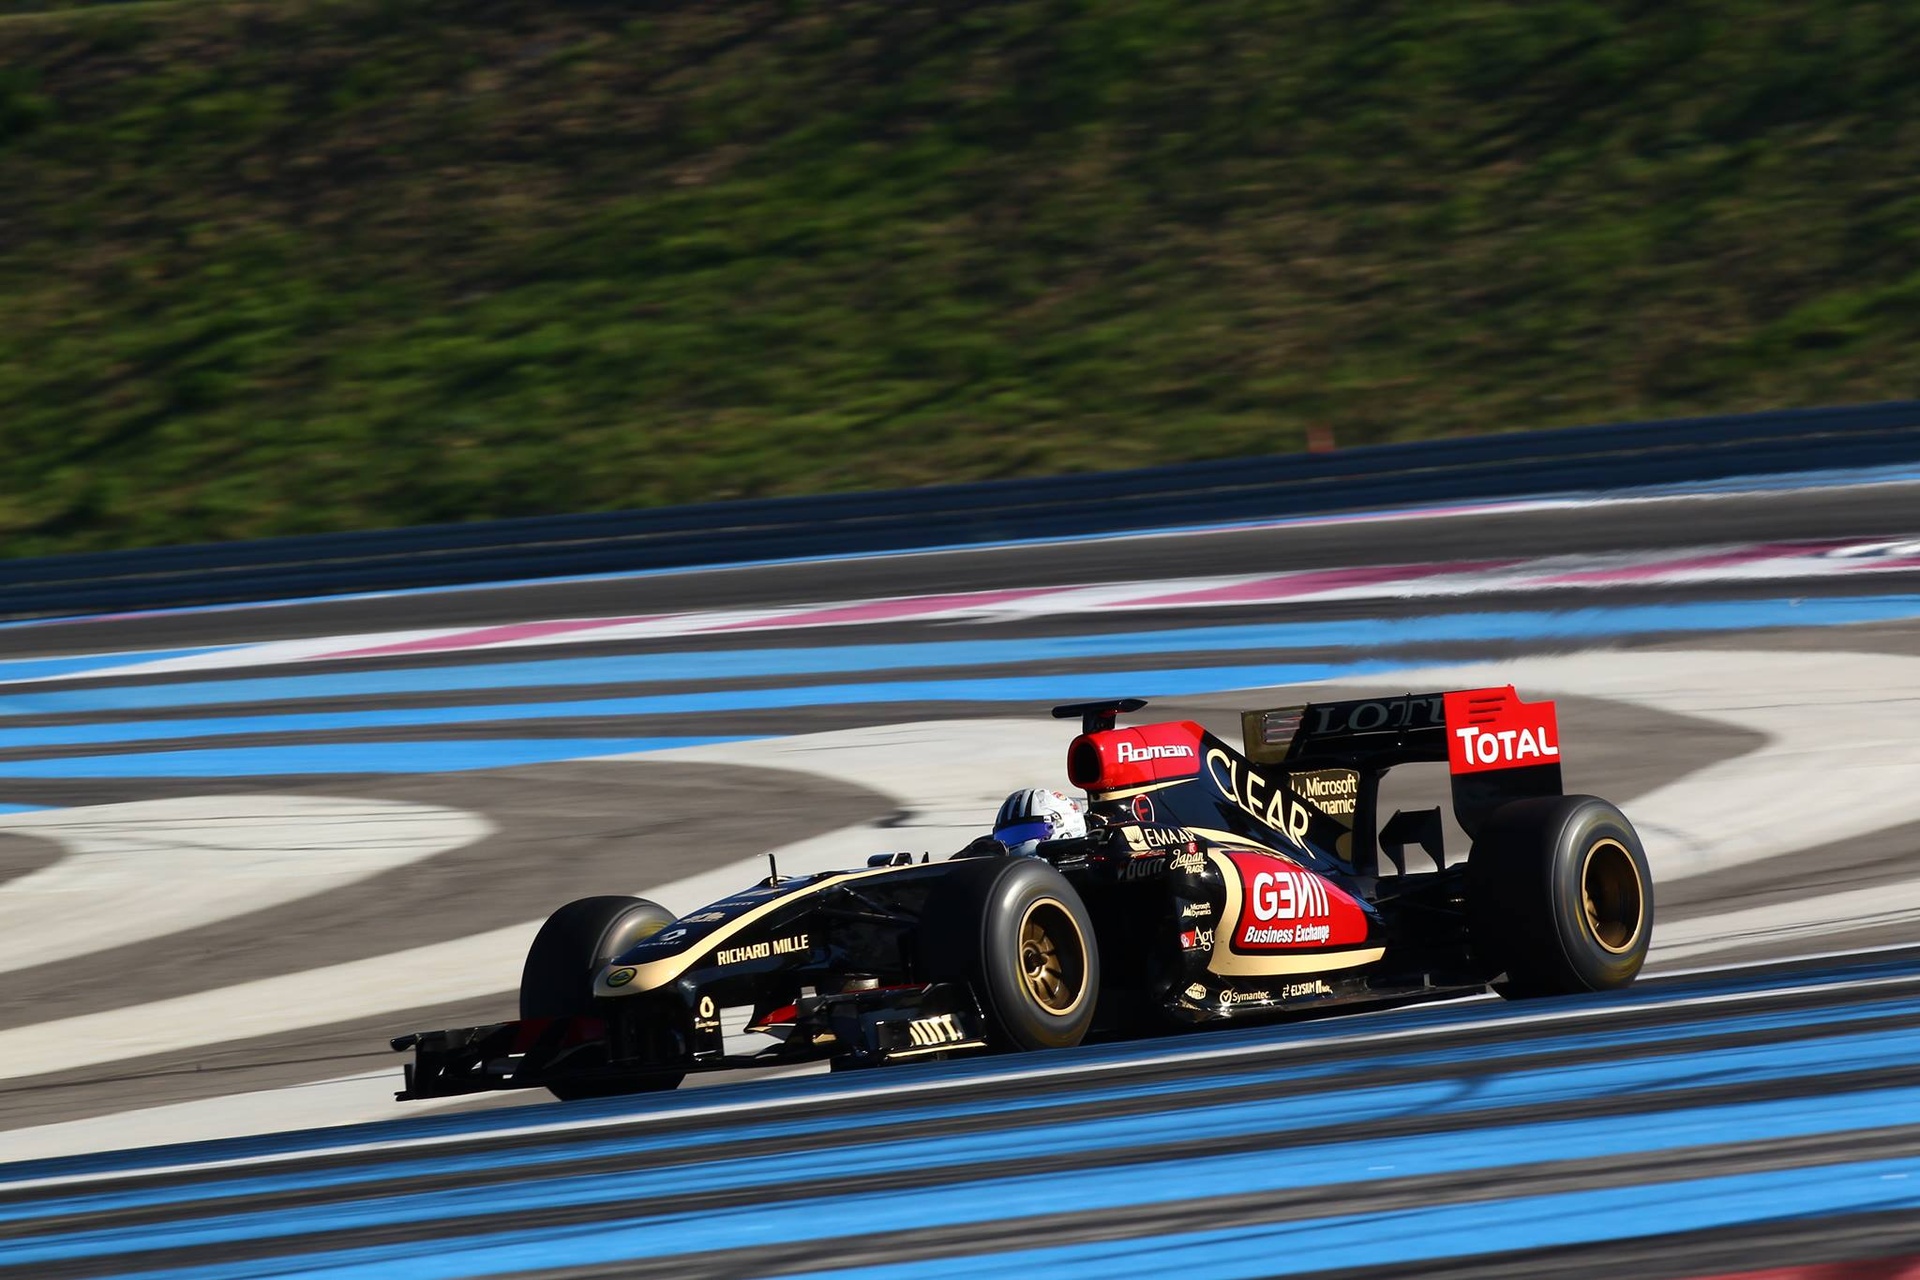 Ալեքս Ֆոնտանա. 30 թվականի սեպտեմբերի 2013-ին Տիչինոյի վարորդը փորձարկում անցկացրեց Formula 1 Lotus-Renault-ով Պոլ Ռիկարի ֆրանսիական շրջագայության վրա: